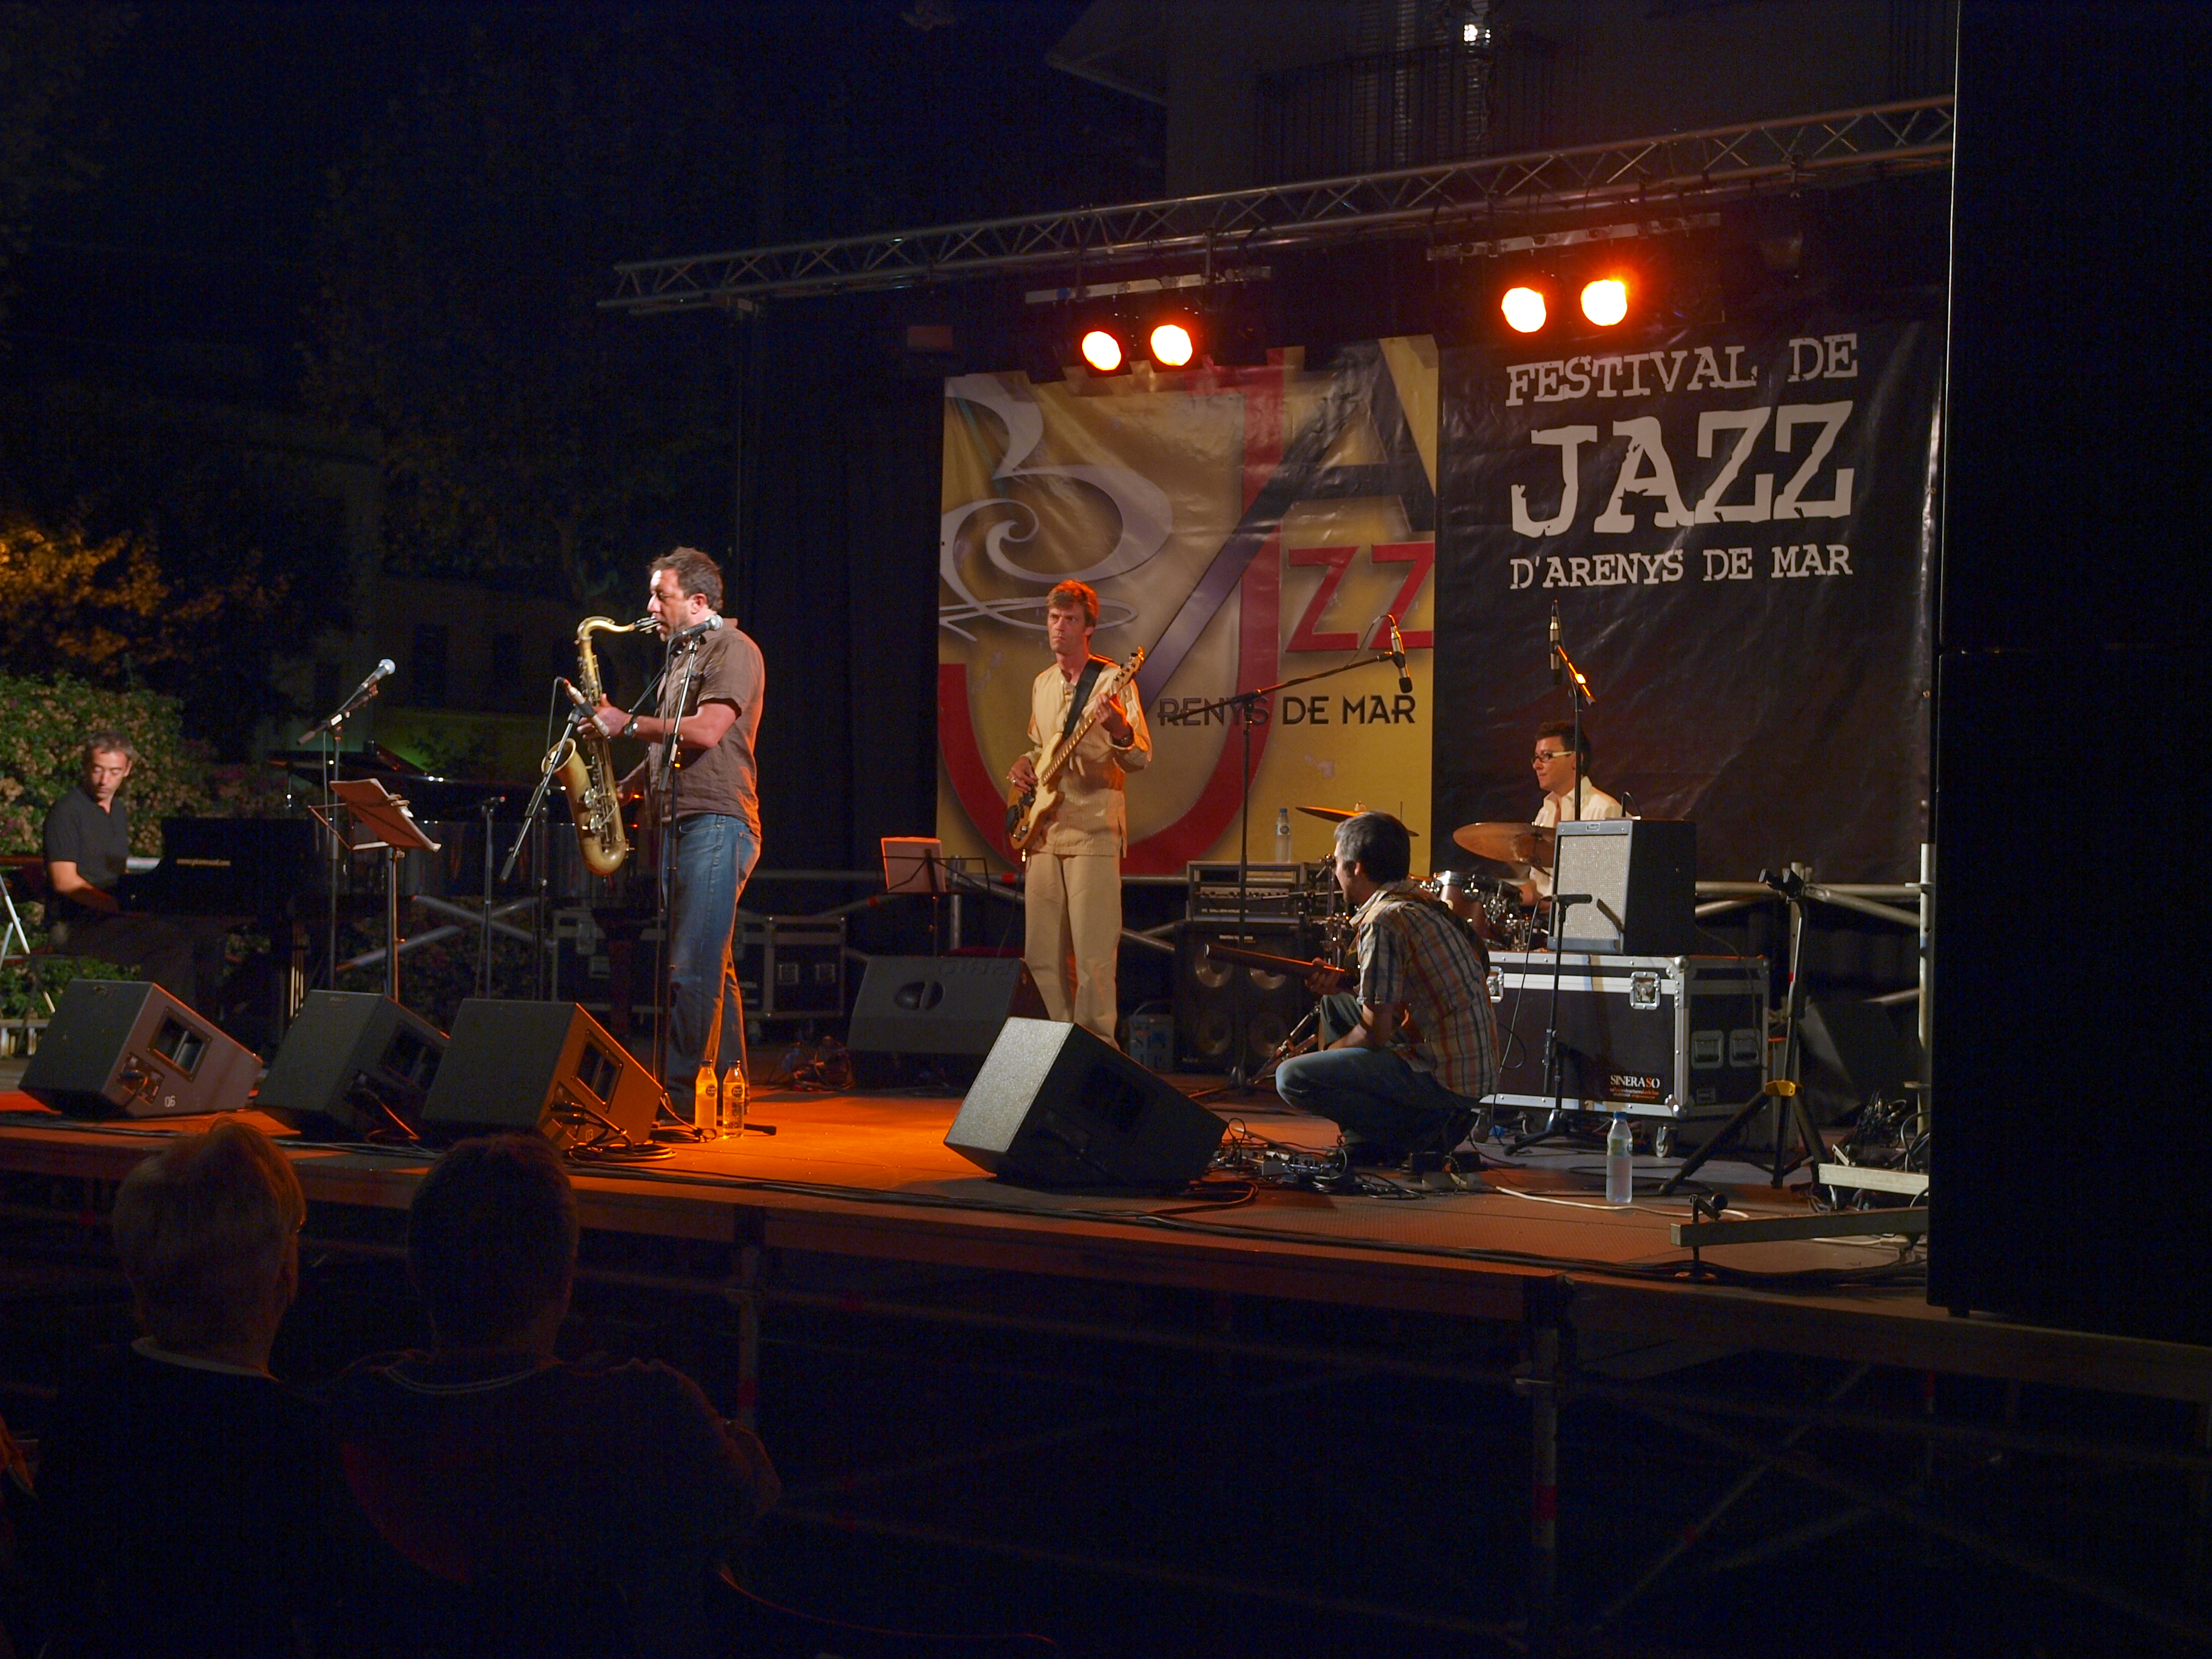 Imatges del 17 Festival de Jazz d'Arenys de Mar -2008 - Foto 36537600